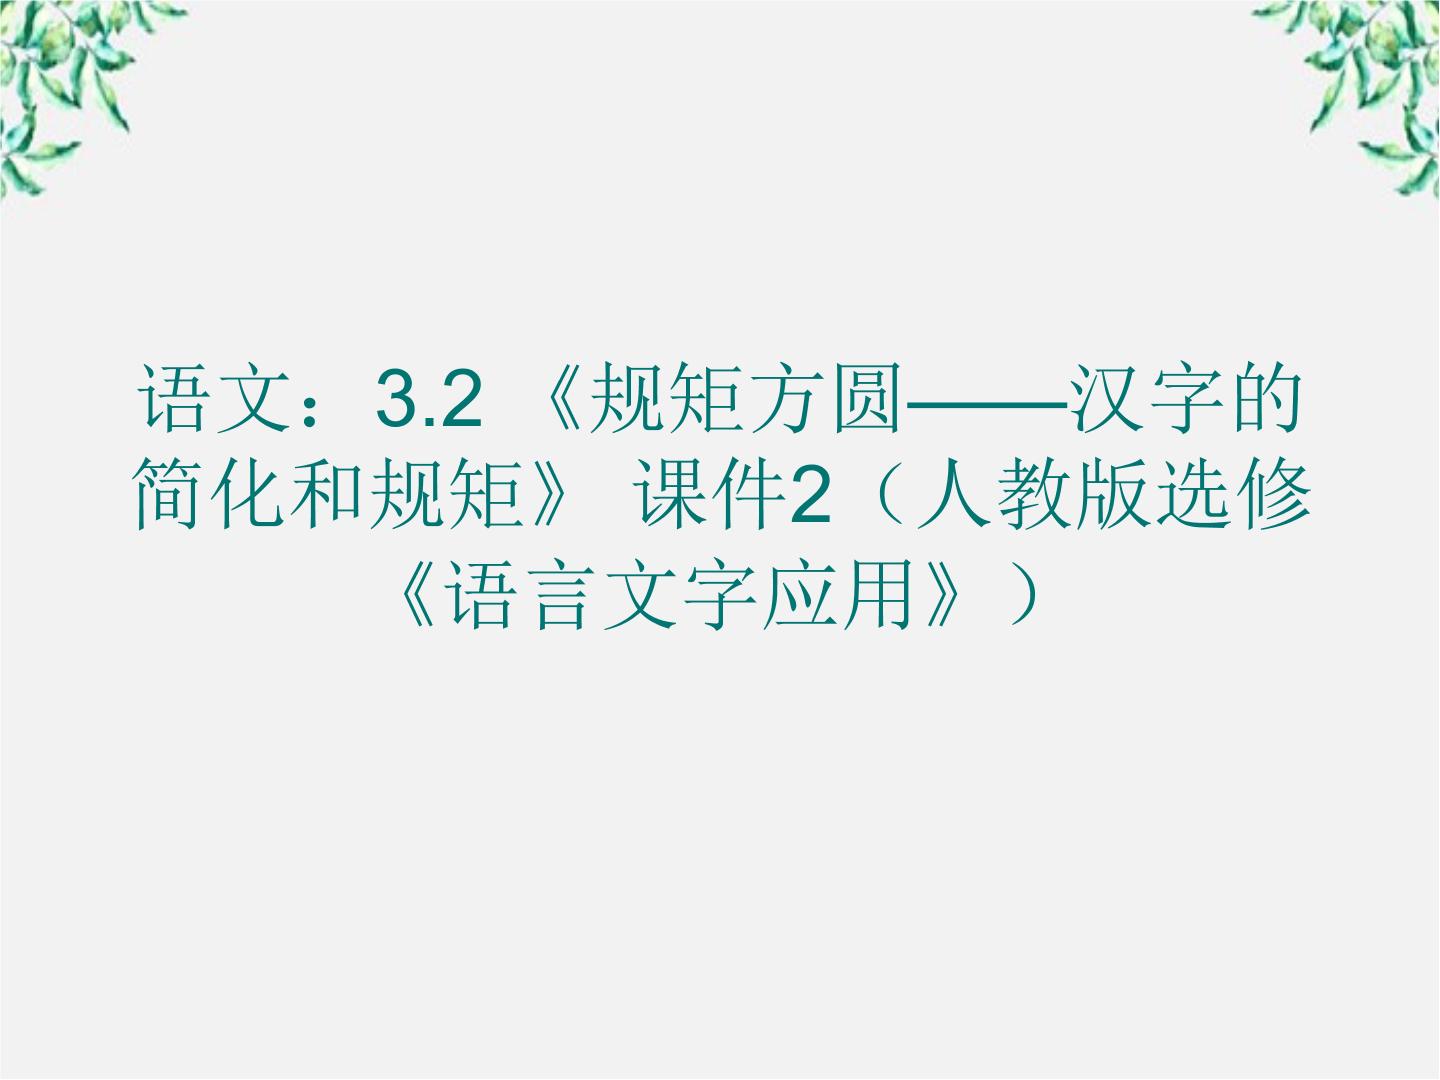 高中第二节 规矩方圆--汉字的简化和规范课文内容ppt课件